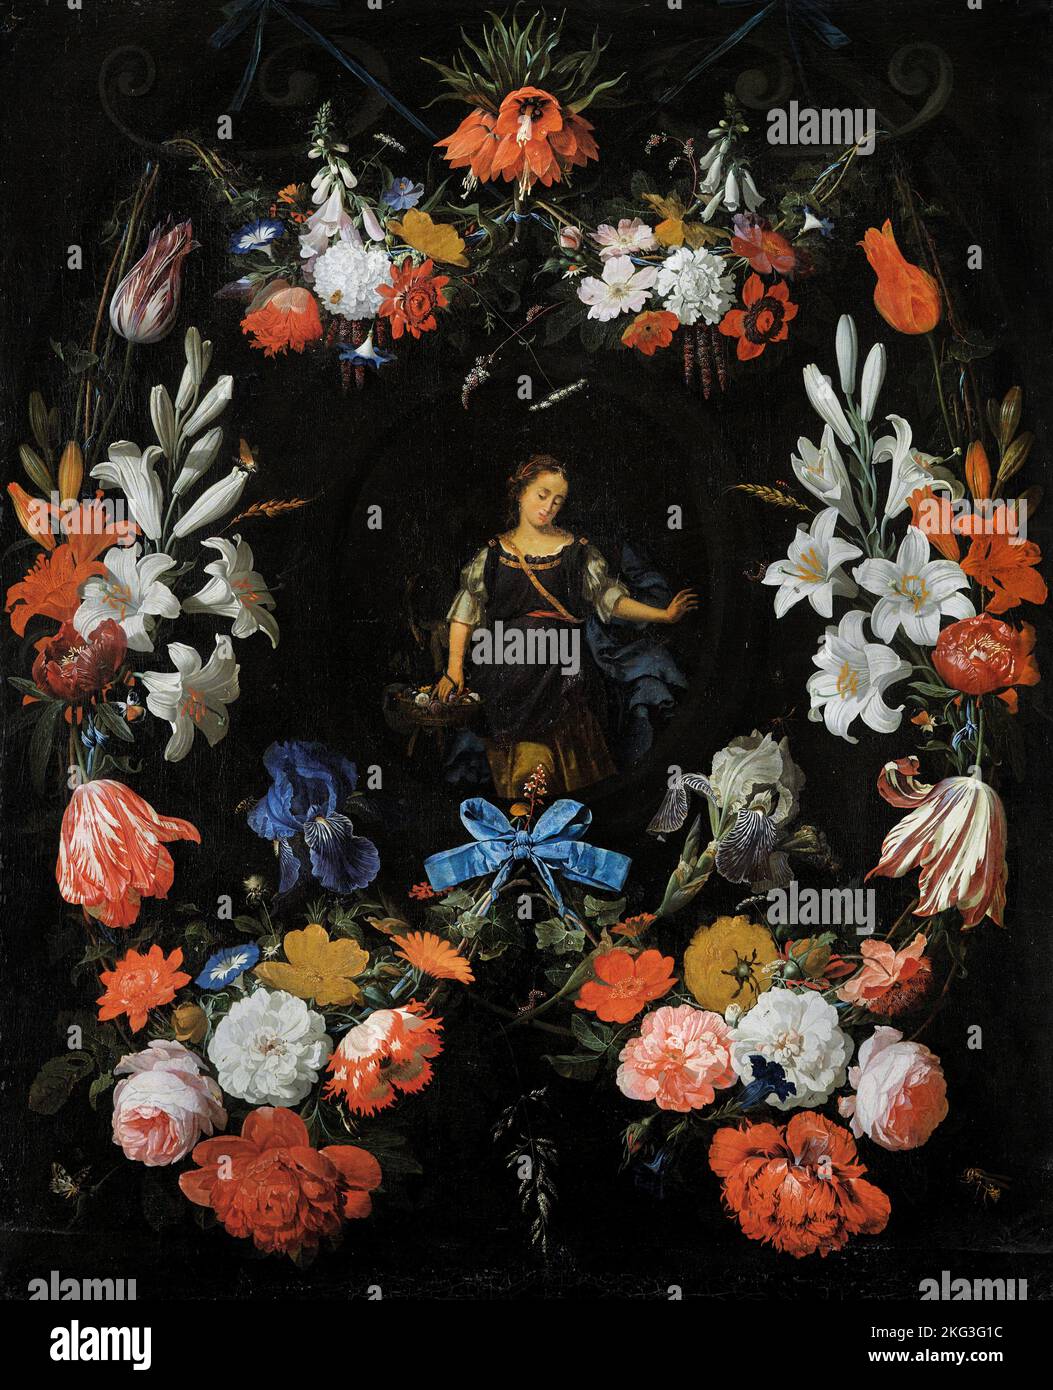 Abraham Mignon; guirlande de fleurs; Circa 1675; huile sur toile; Musée des beaux-arts de Bilbao, Bilbao, Espagne. Banque D'Images